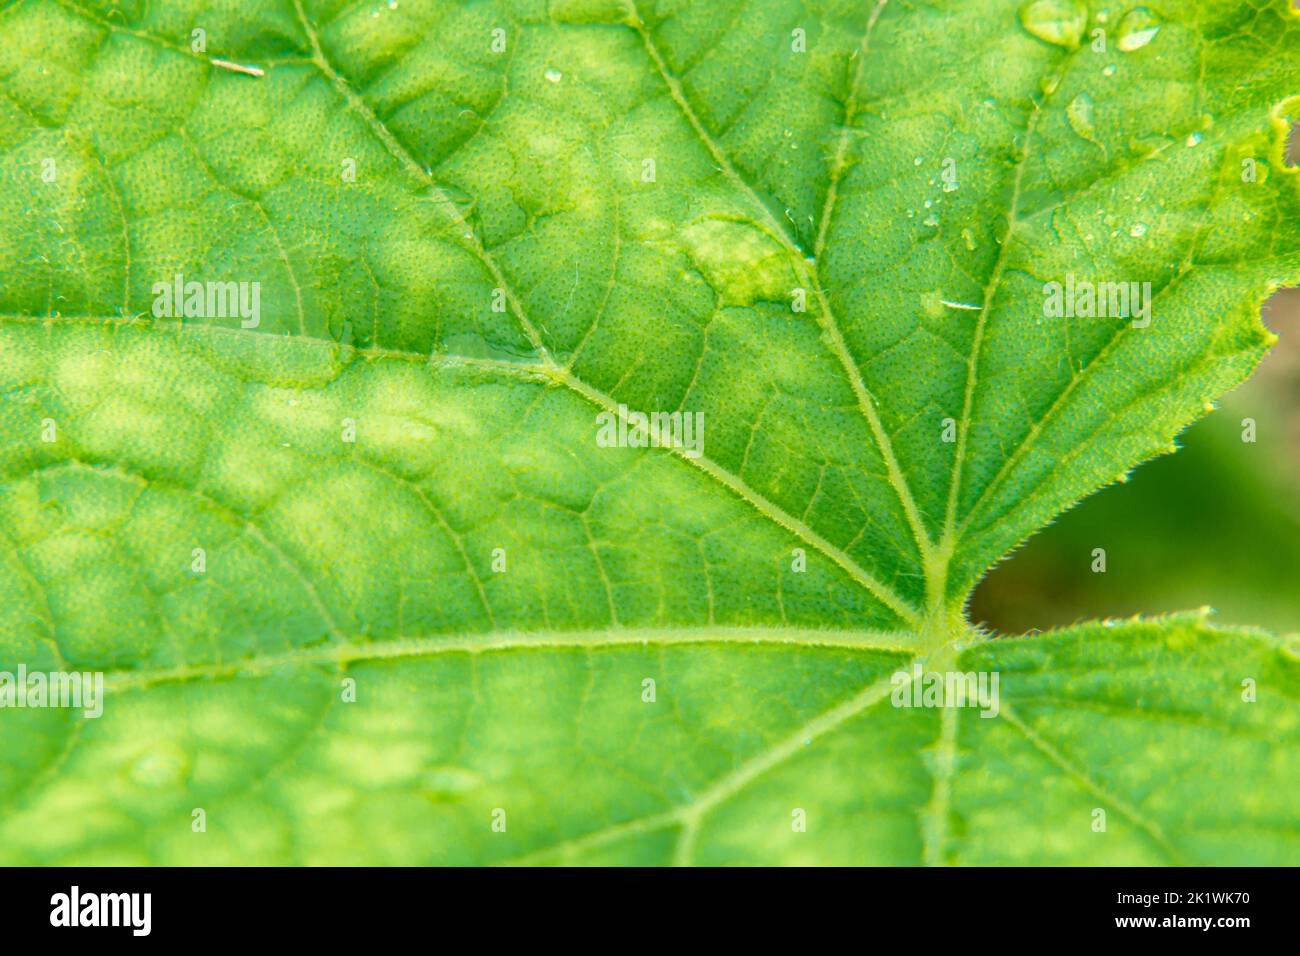 taches jaunes sur les feuilles de la plante - un indicateur de sol appauvri et appauvri, la plante a besoin d'alimentation minérale, foyer sélectif Banque D'Images